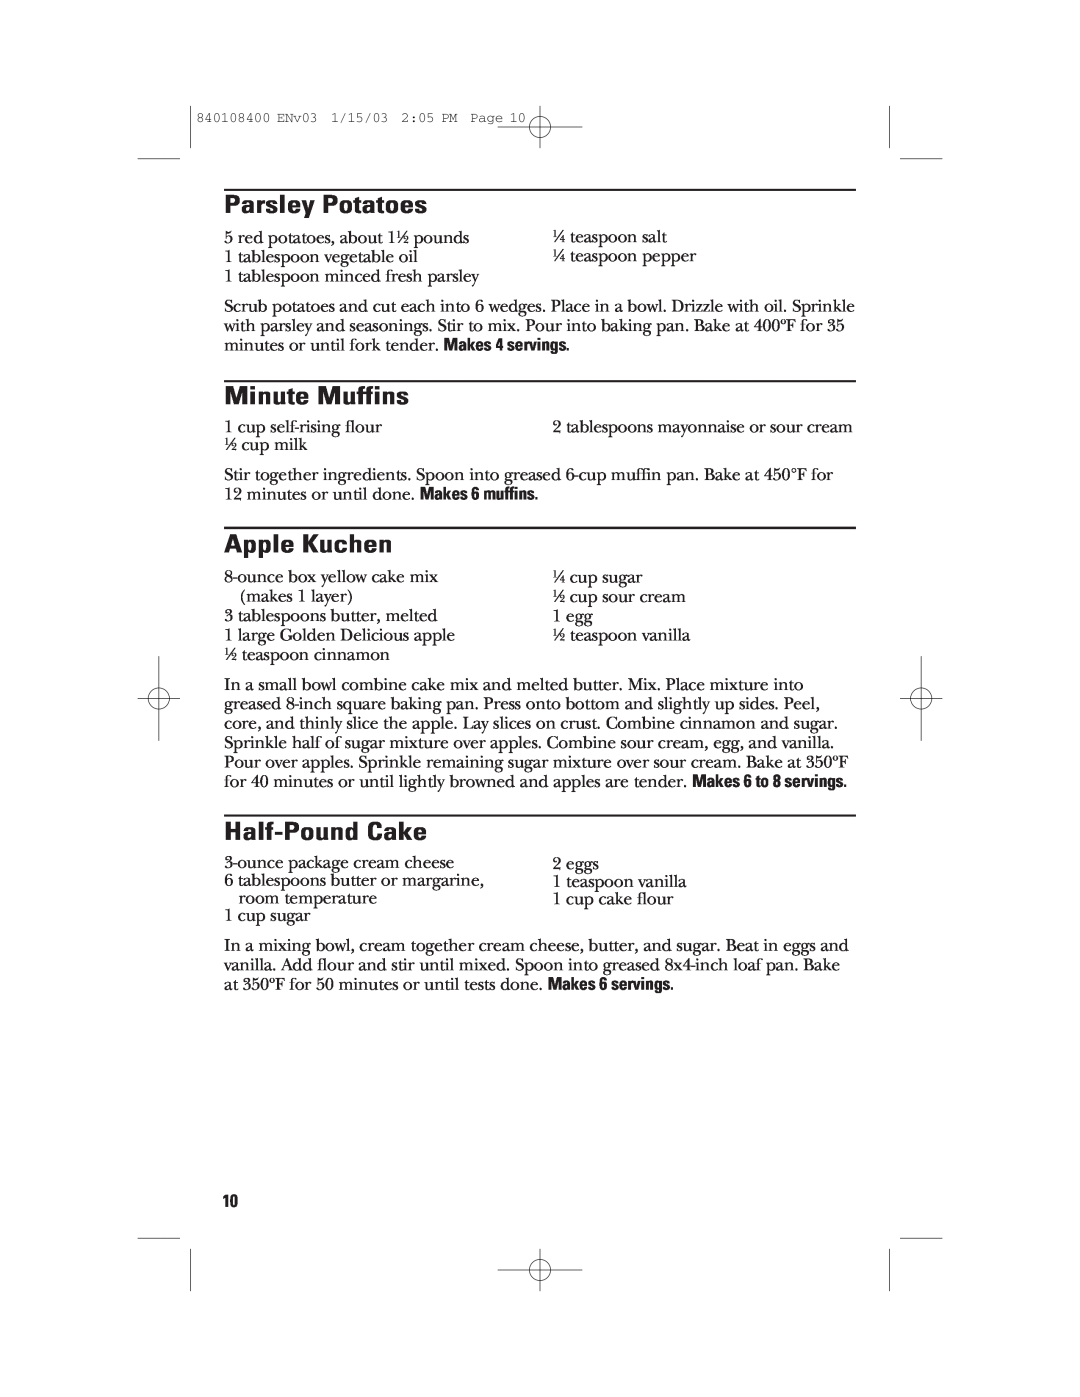 GE 840108400, 168955 manual Parsley Potatoes, Minute Muffins, Apple Kuchen, Half-Pound Cake 